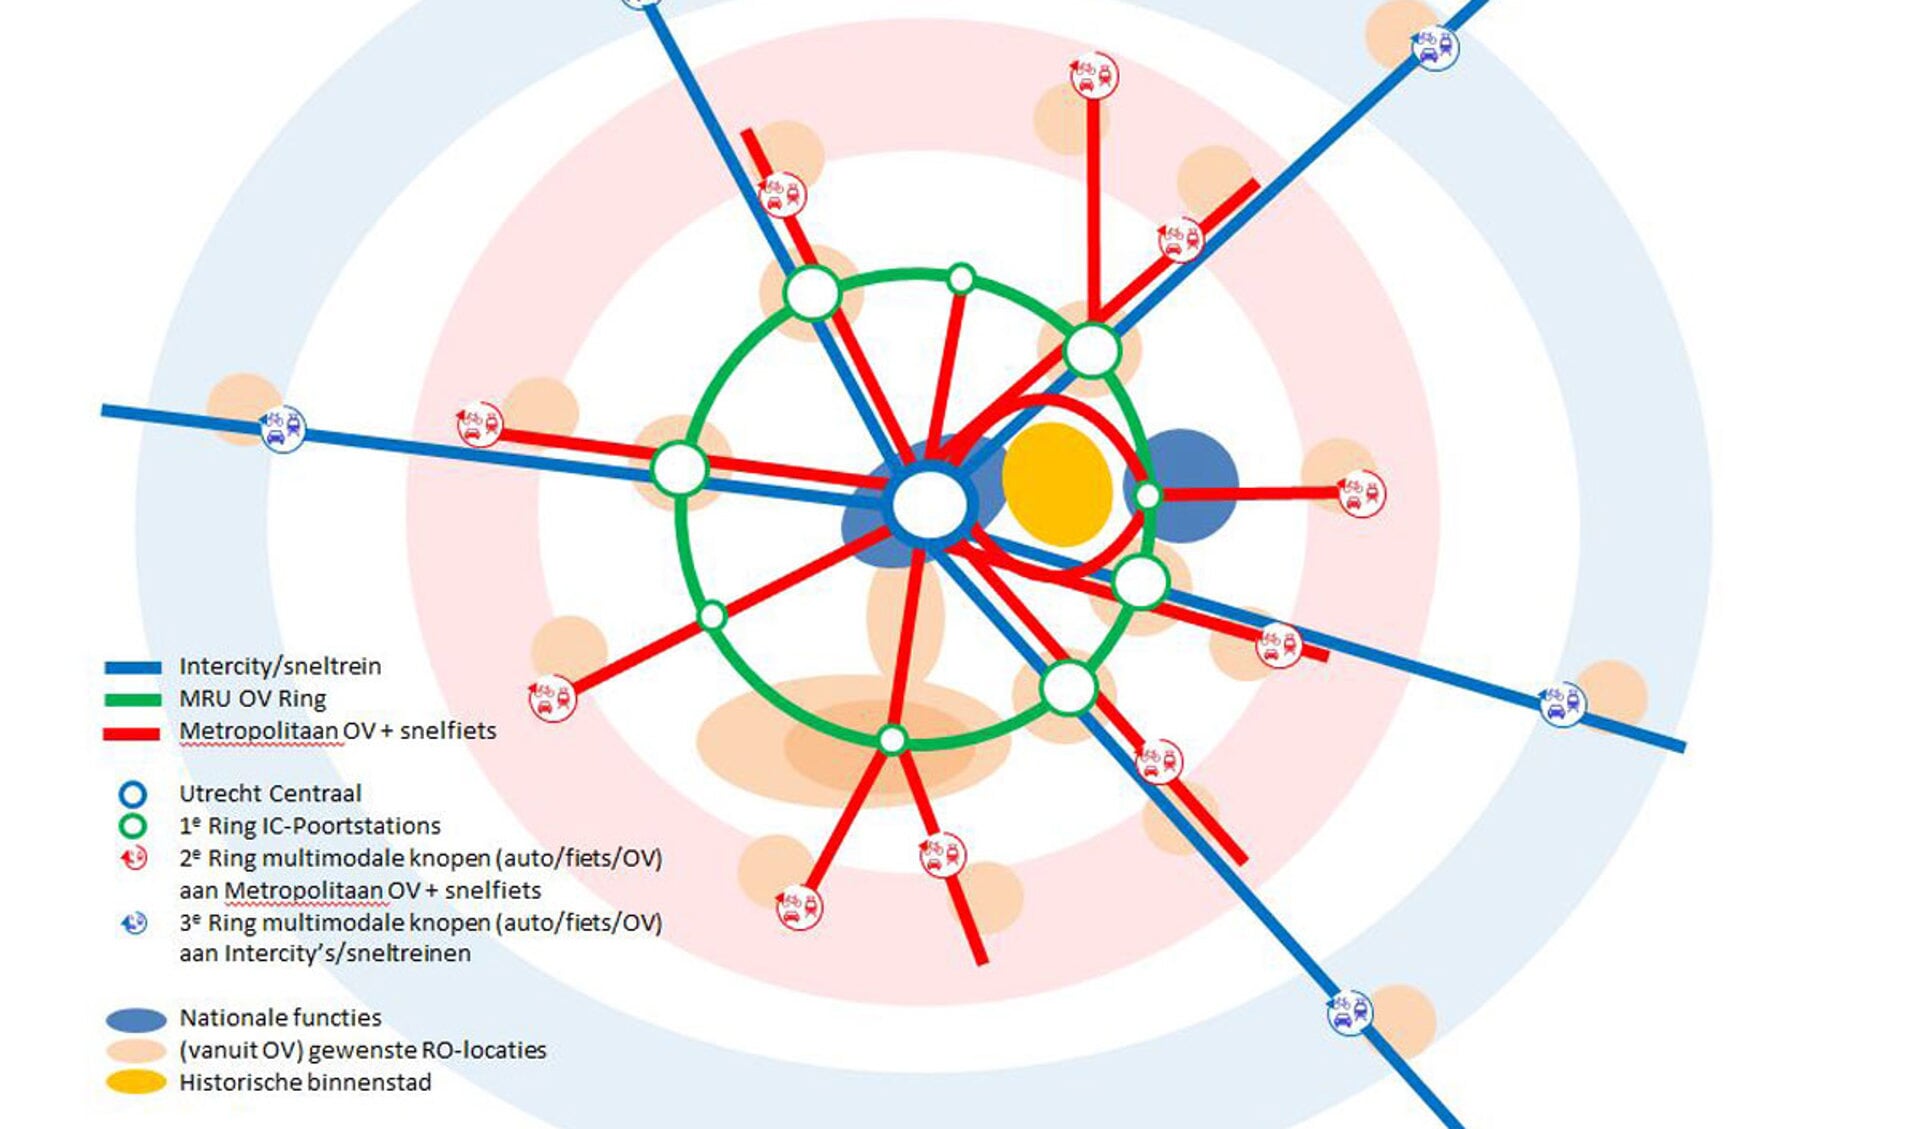 Bunnik is hier onderdeel van de groen cirkel met OV knooppunten, bedoeld om Utrecht CS te ontlasten